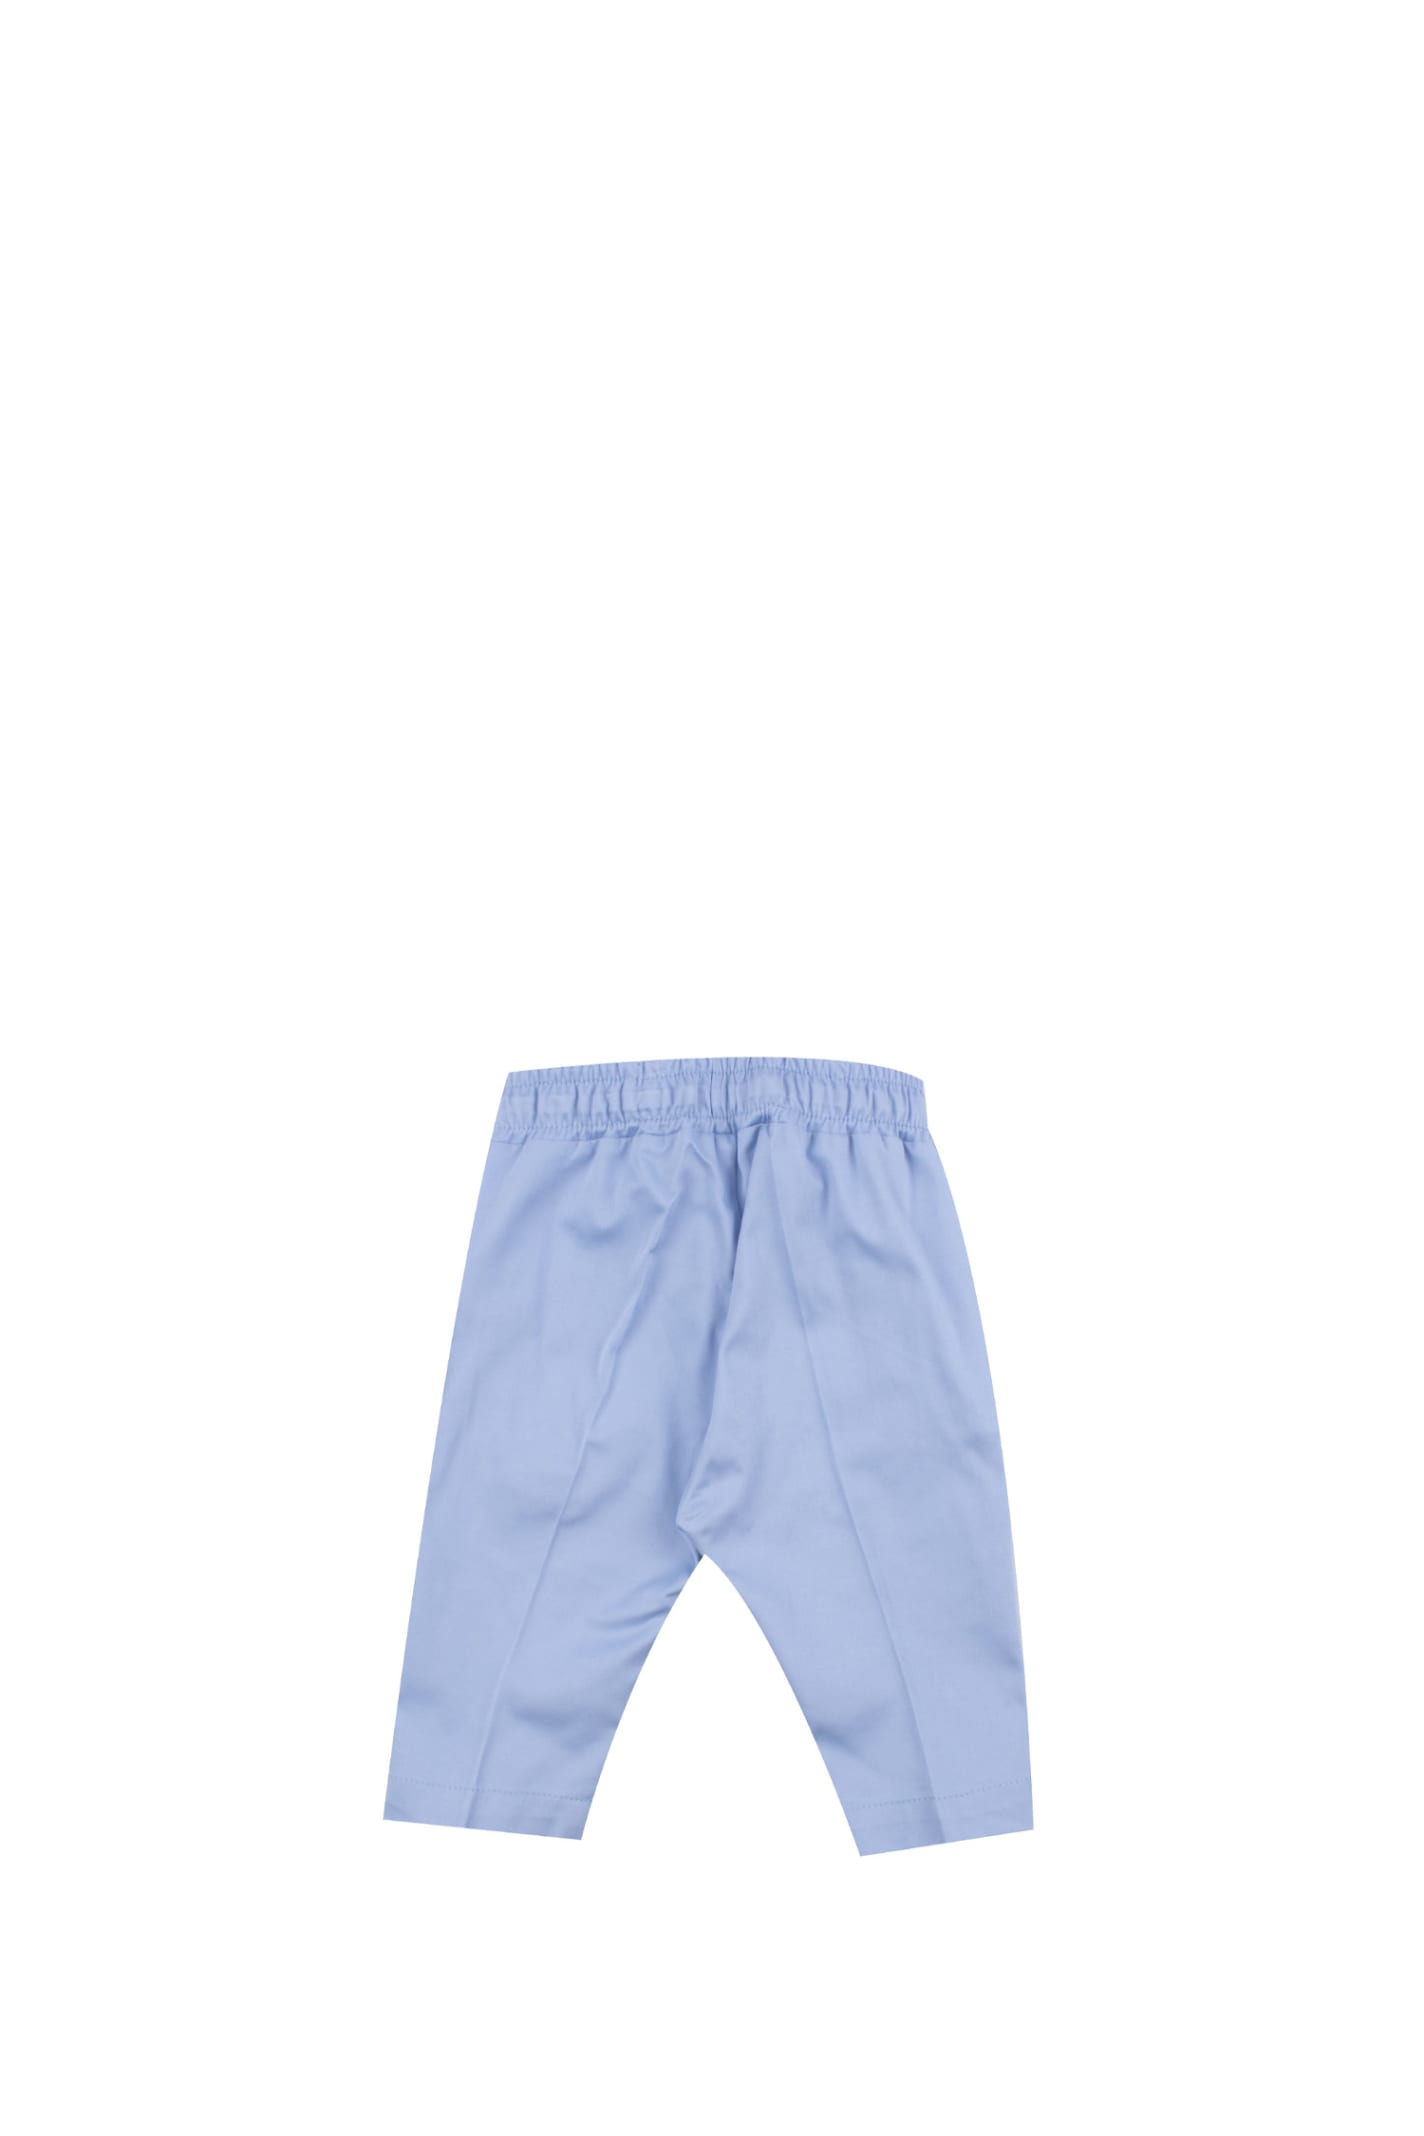 Shop Manuel Ritz Cotton Pants In Light Blue